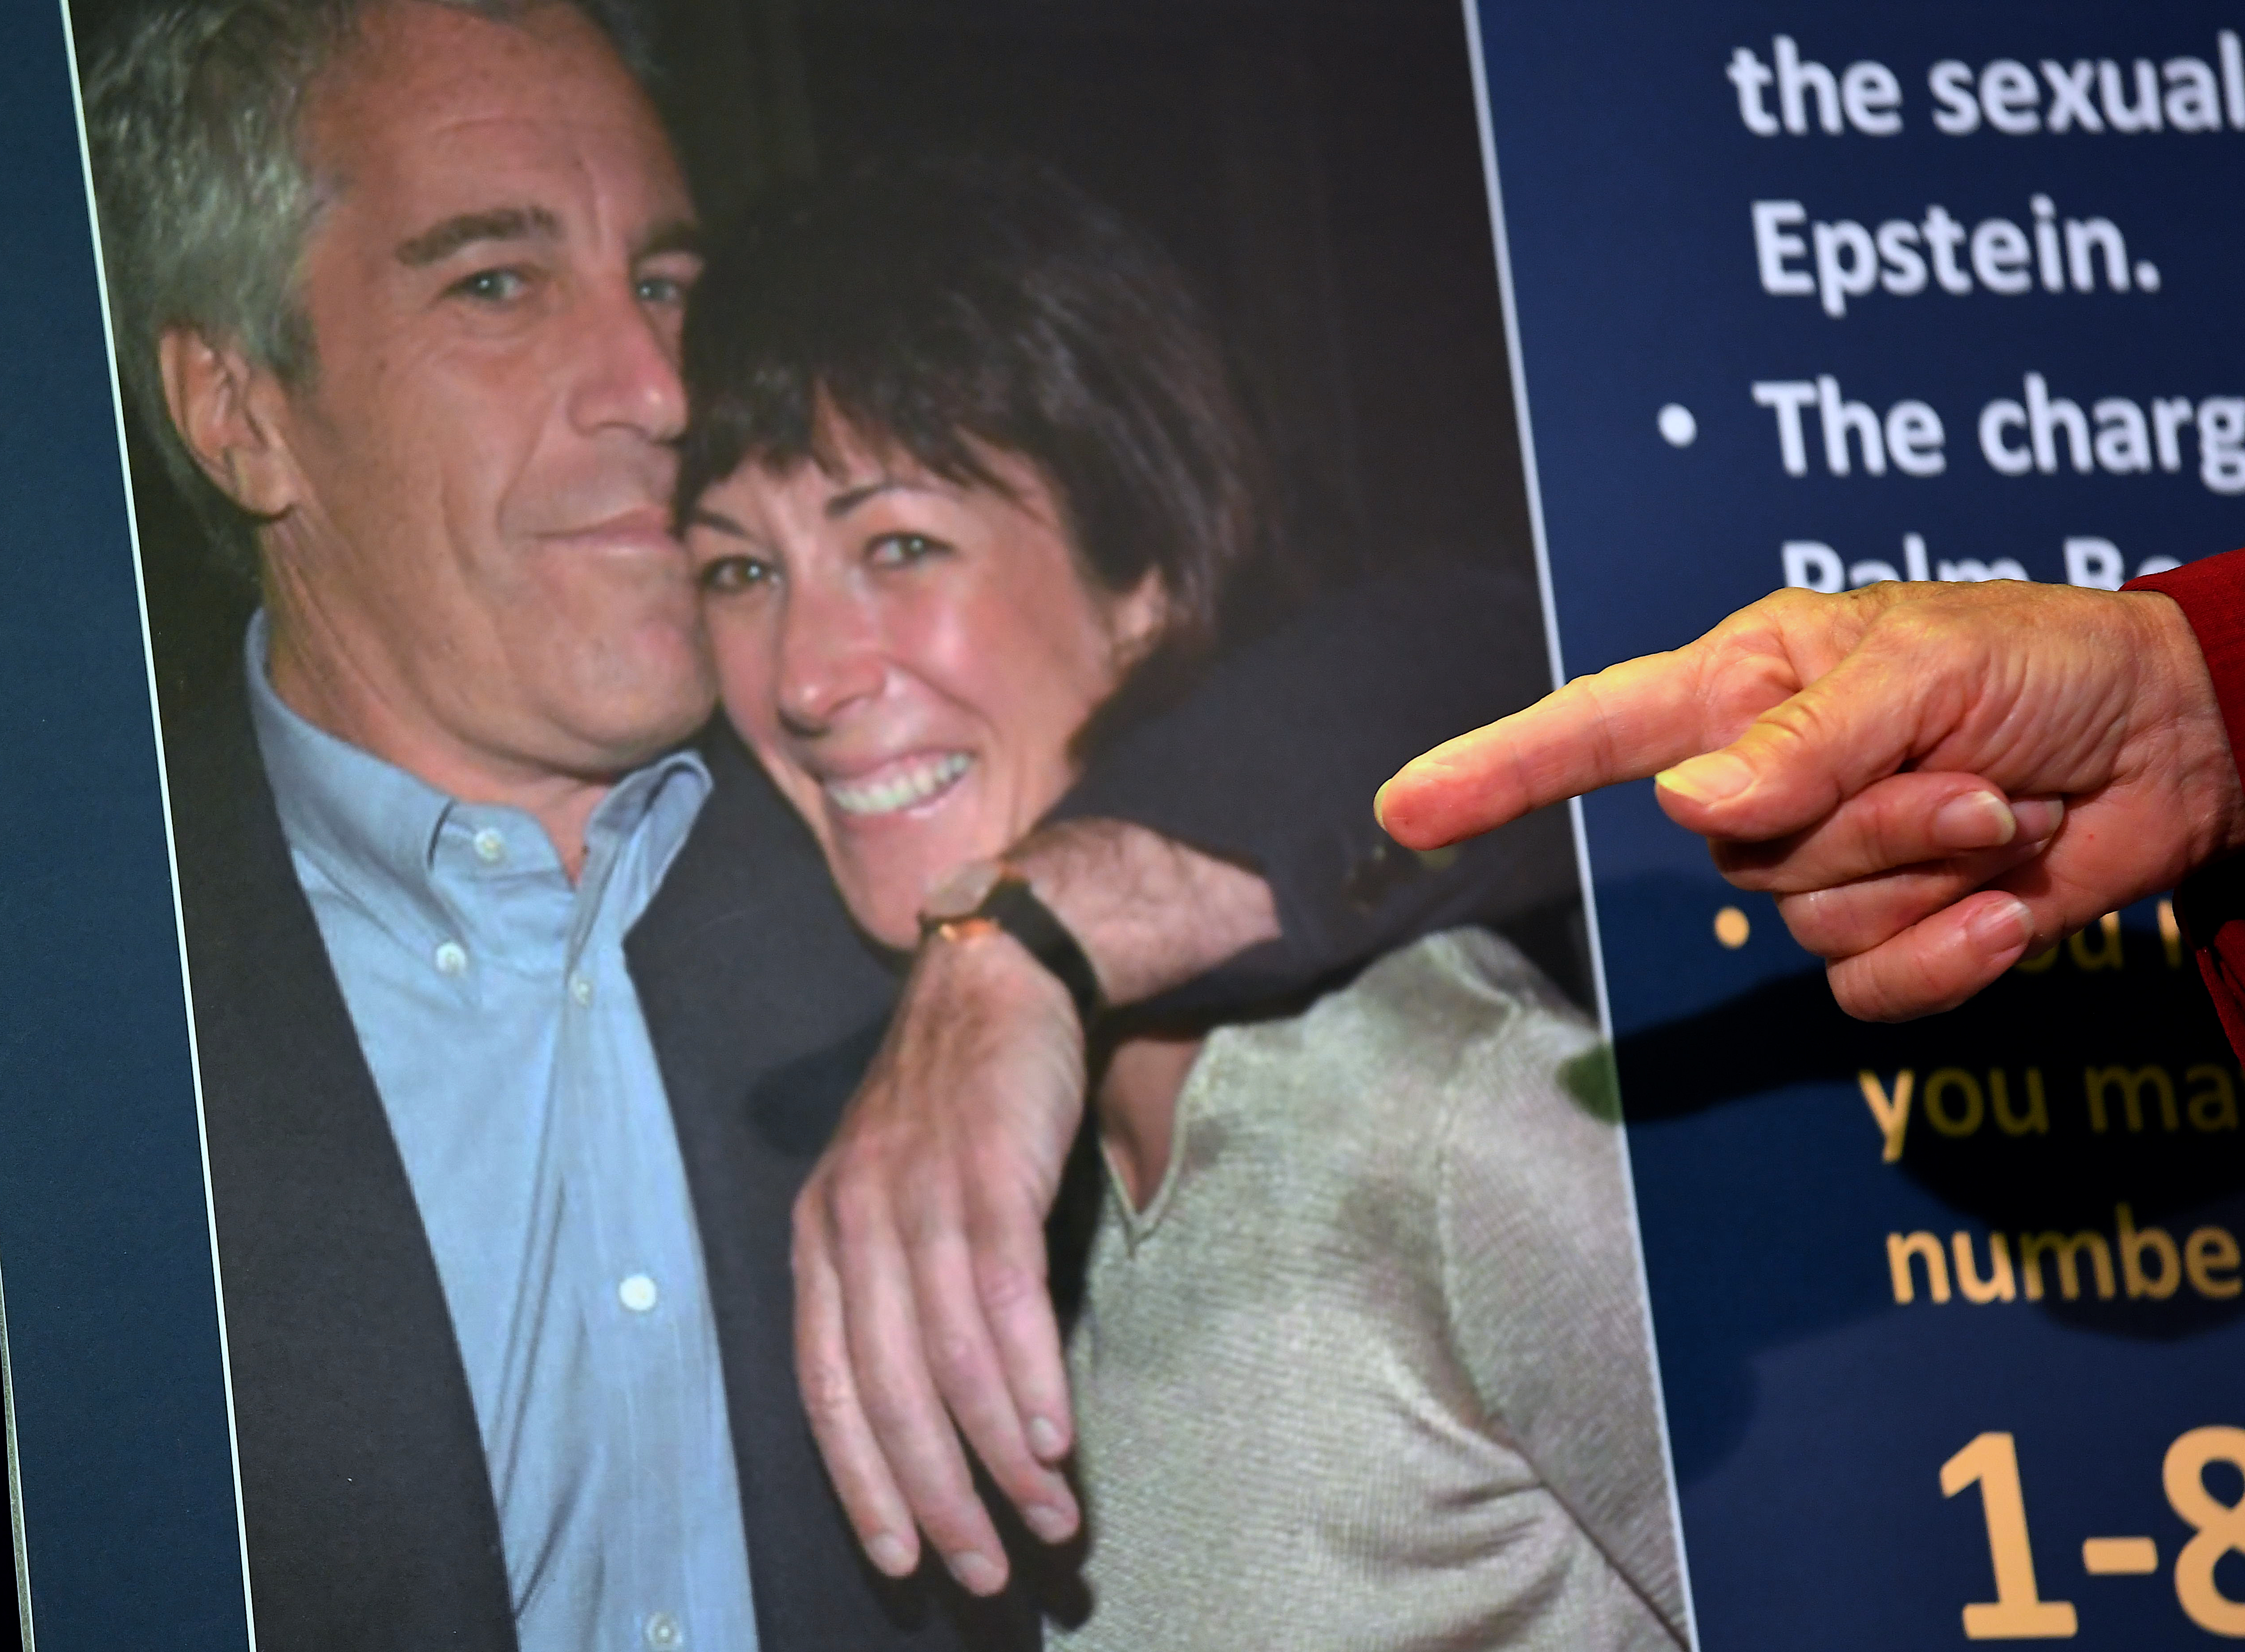 35 évet kaphat Epstein volt barátnője, aki segített behálózni és csapdába csalni a fiatalkorú lányokat